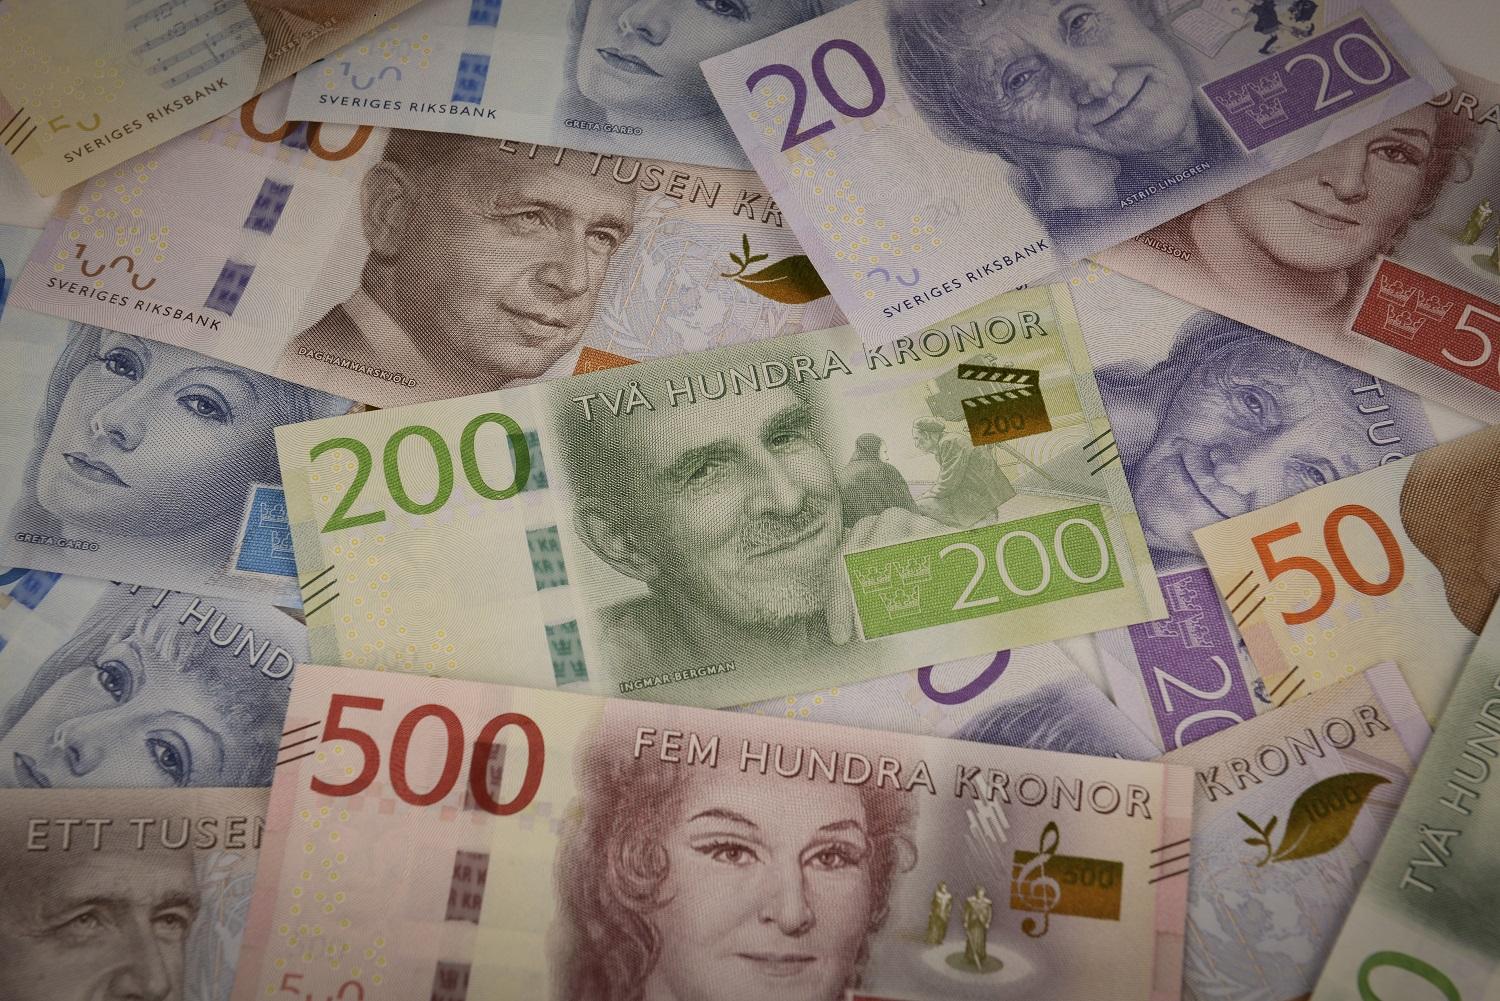 De nya sedlarna är mindre och bilderna gör kulturella nedslag i olika delar av Sverige. Sedlarna visar kulturpersonligheter, som Ingmar Bergman på 200-kronorssedeln, och natur- och miljömotiv kopplade till personerna. (Foto: Riksbanken)
